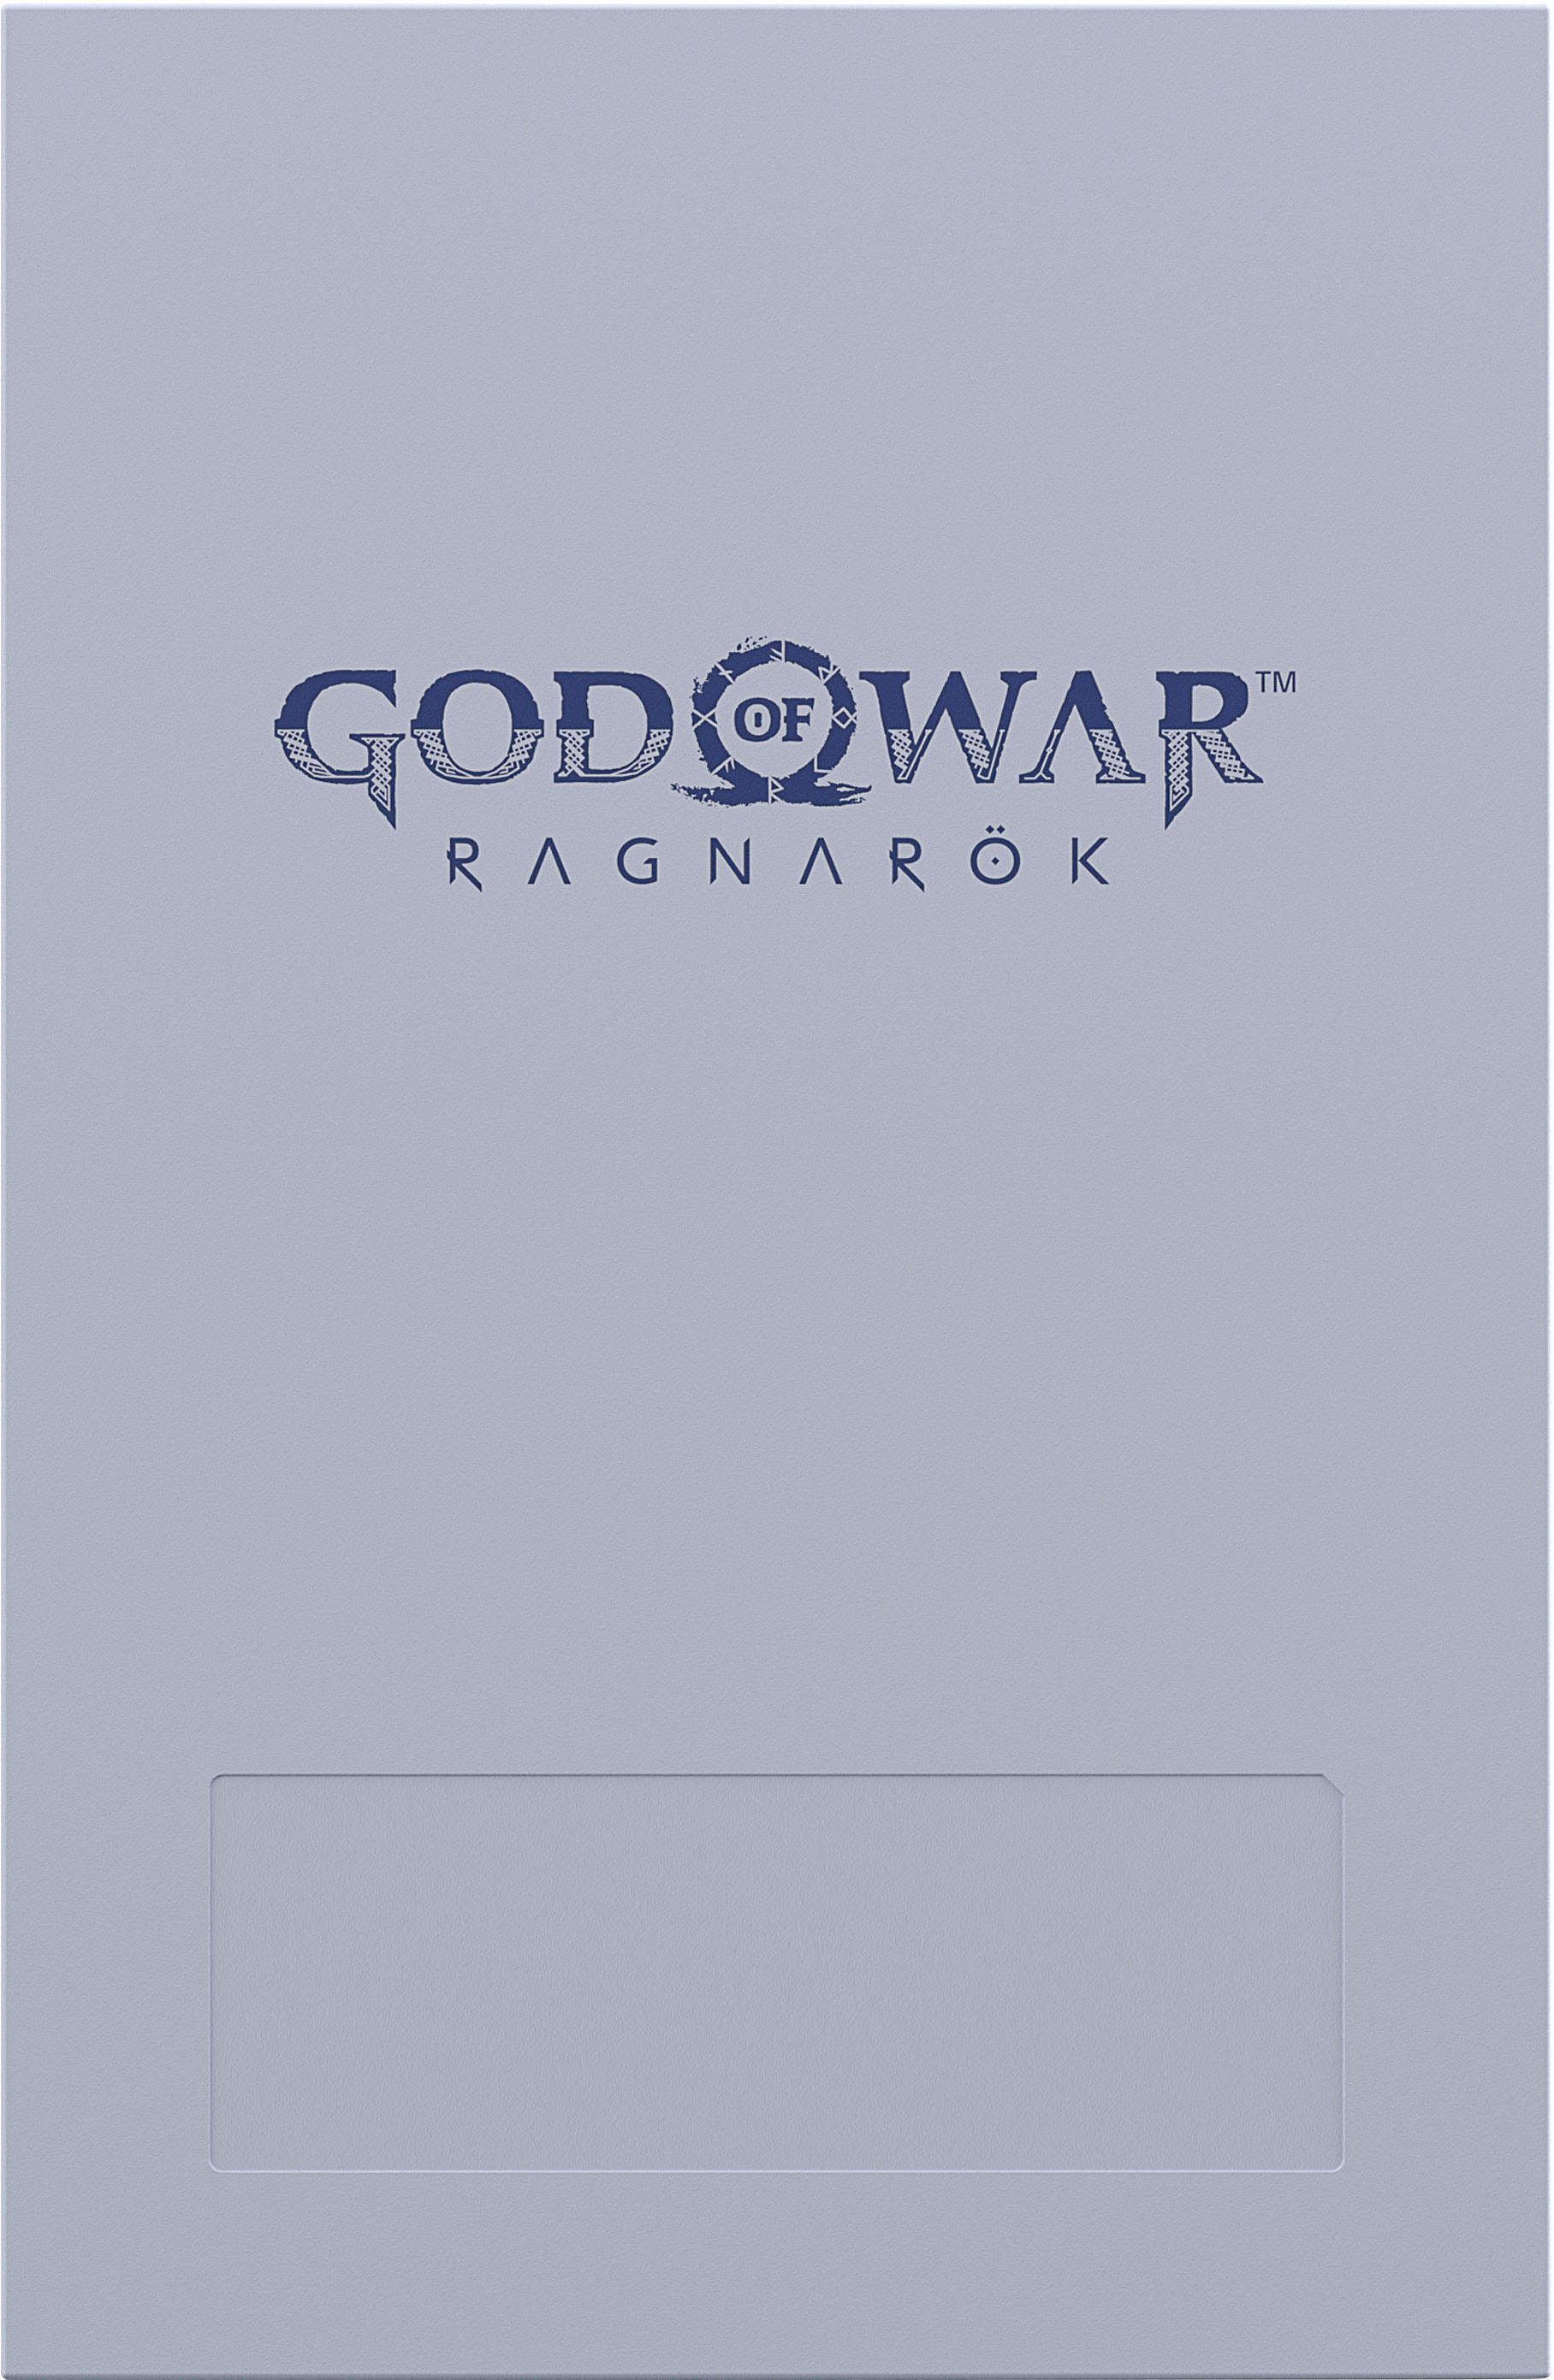 God of War Ragnarök : Seagate dévoile un disque dur de 2 To aux